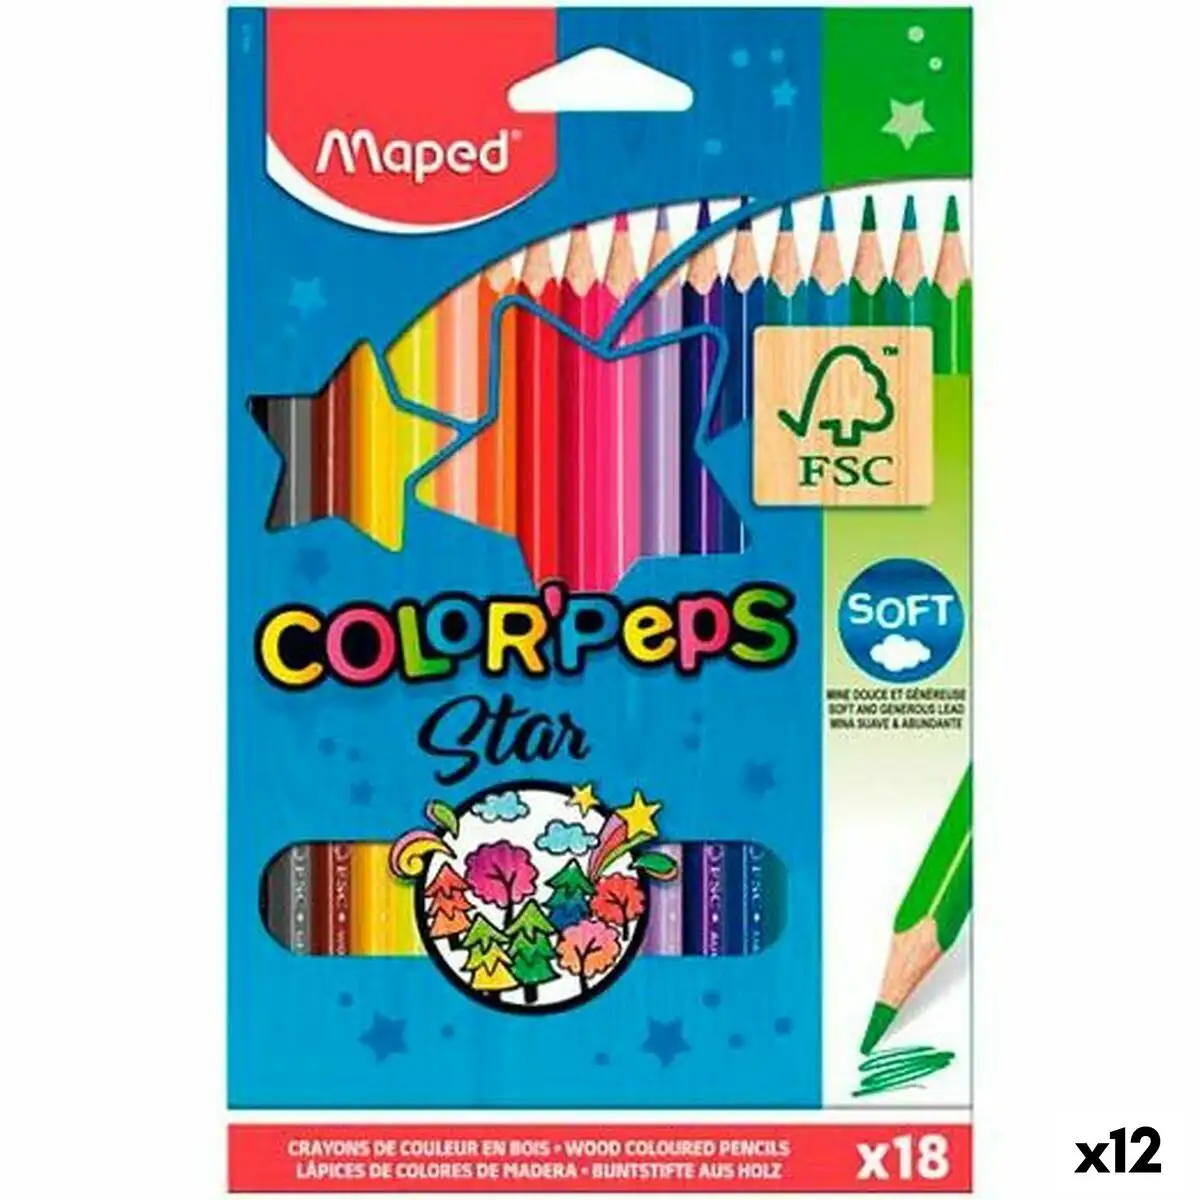 Crayons de couleur maped color peps star multicouleur 18 pieces 12 unites _1675. DIAYTAR SENEGAL - Votre Destination pour un Shopping Unique. Parcourez notre catalogue et trouvez des articles qui vous inspirent et vous édifient.